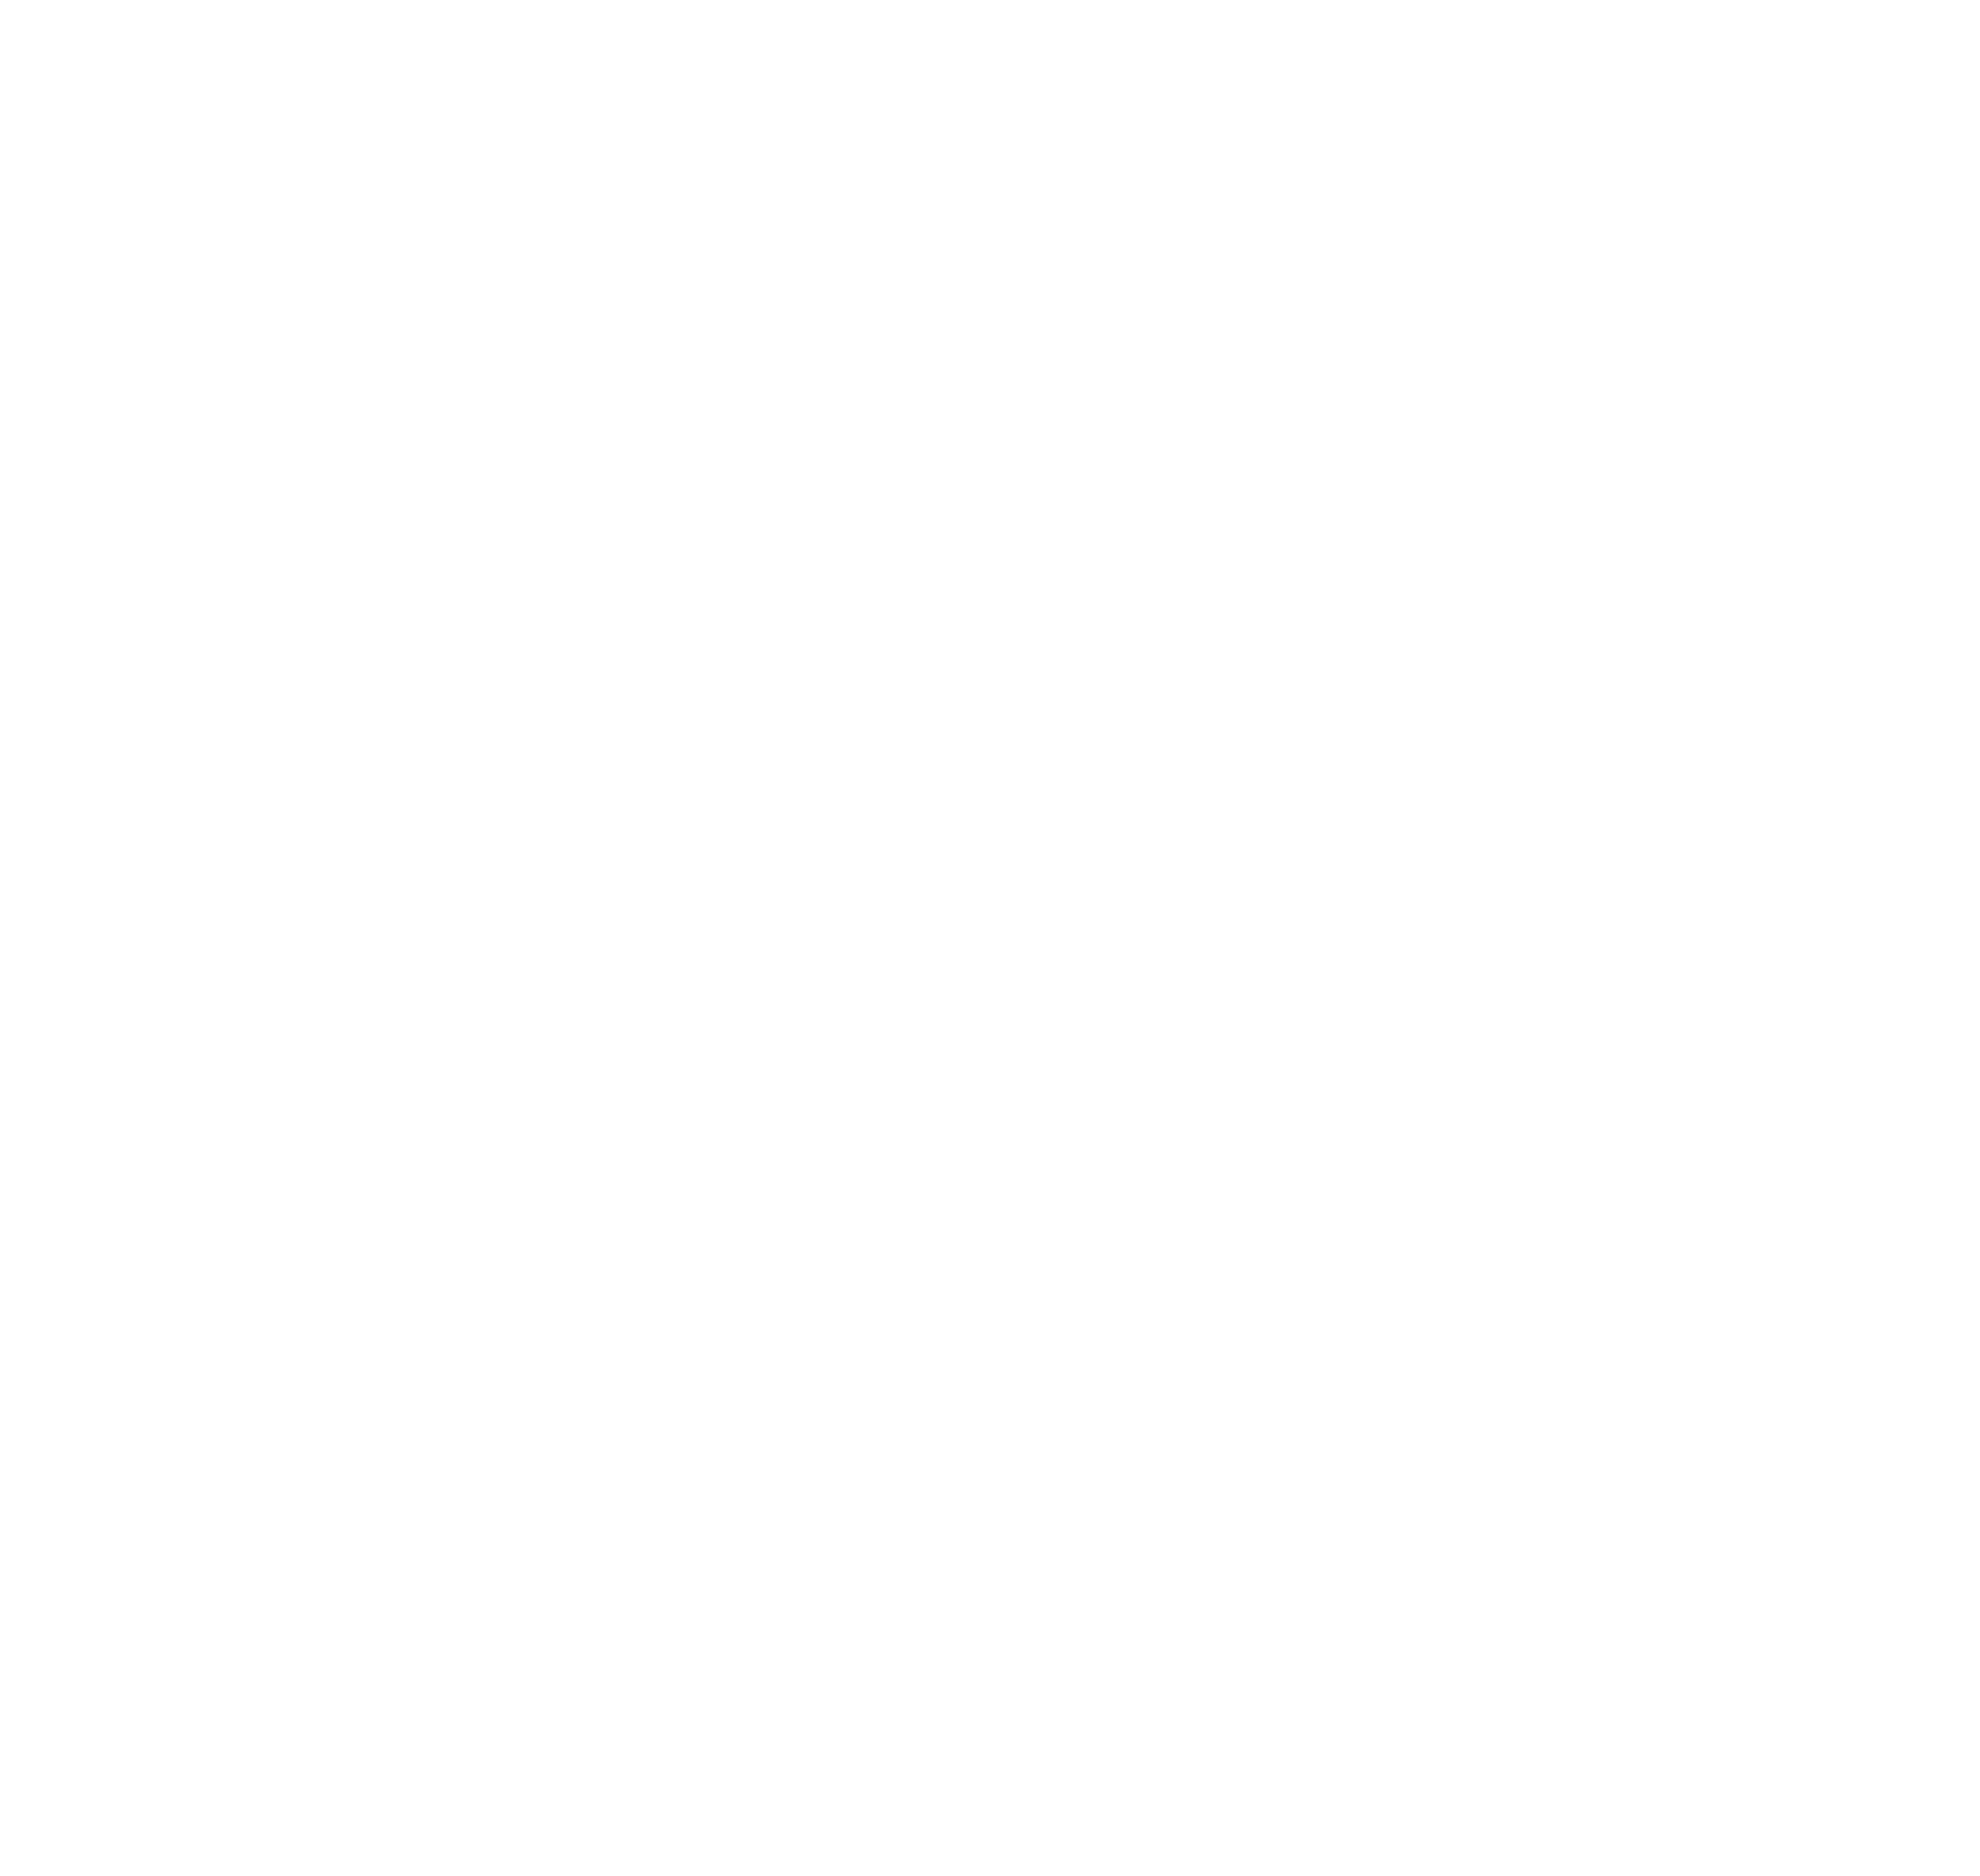 Weeshuis-van-de-Kunst-De-Bilt-logo-wit